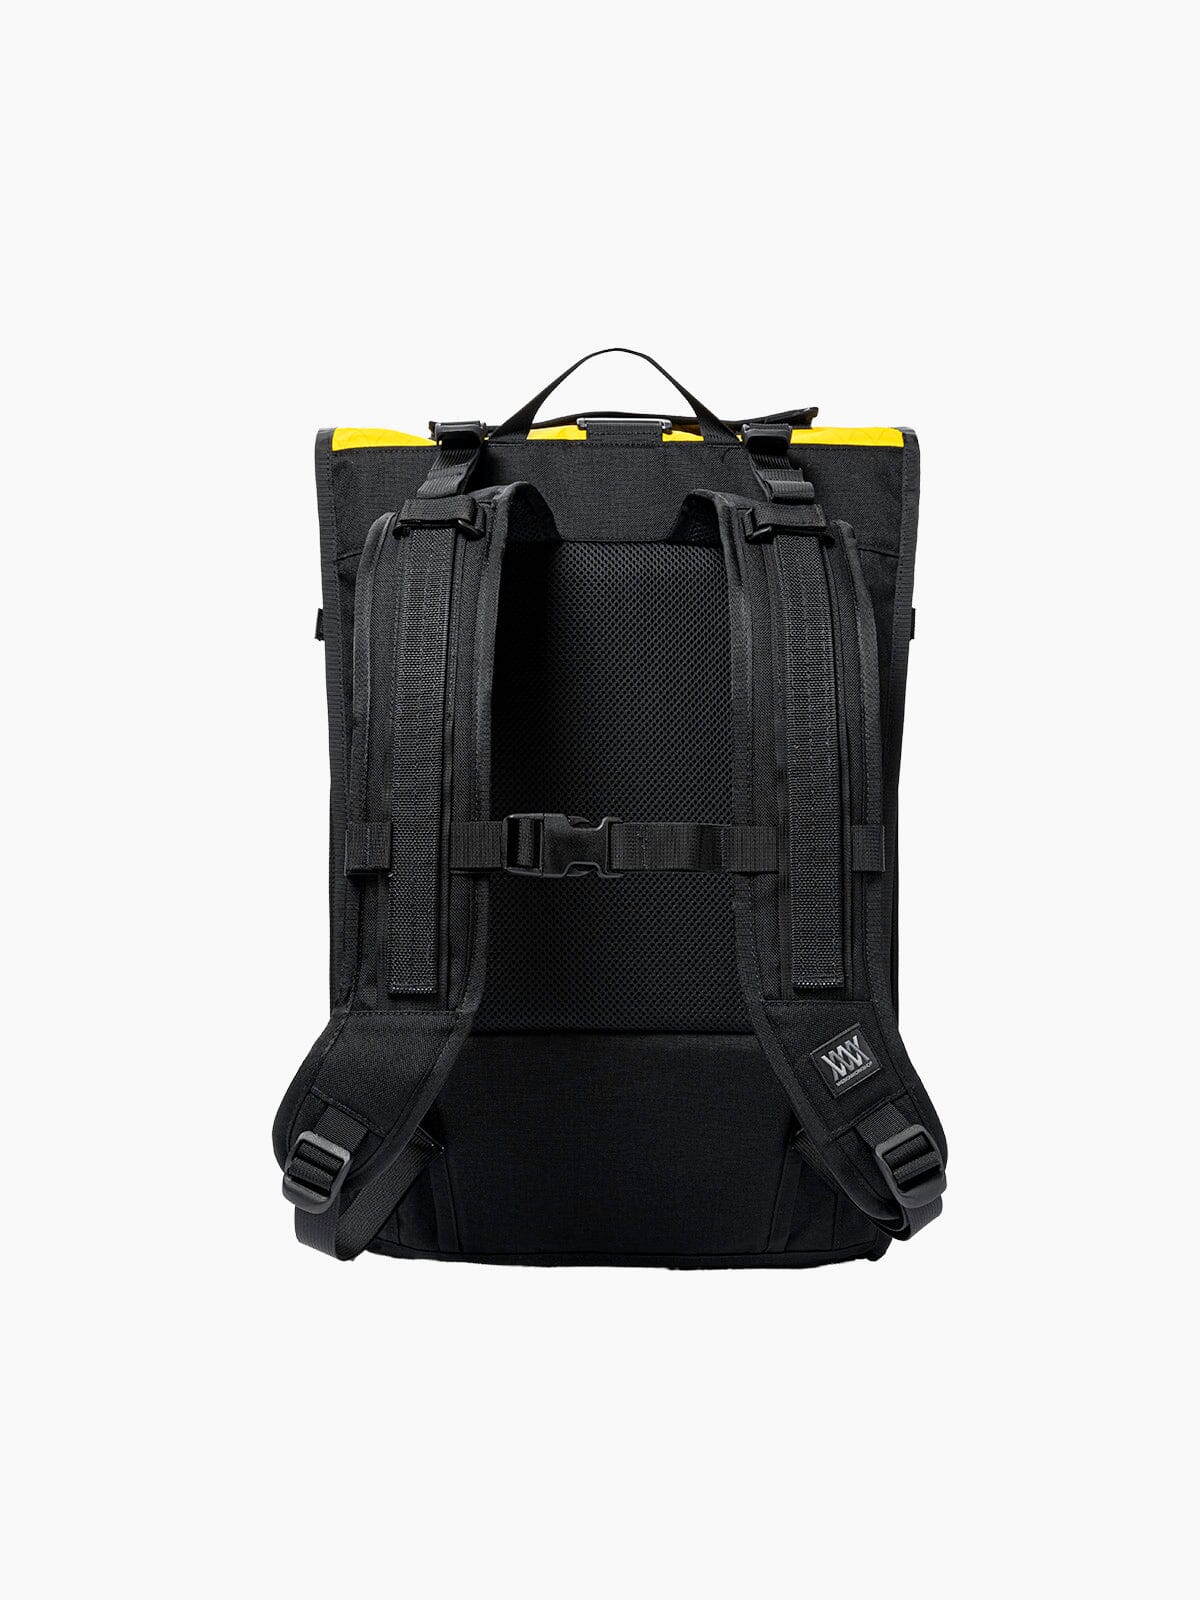 R6 Arkiv Field Pack 40L by Mission Workshop - Weersbestendige tassen & technische kleding - San Francisco & Los Angeles - Gemaakt om te weerstaan - Voor altijd gegarandeerd